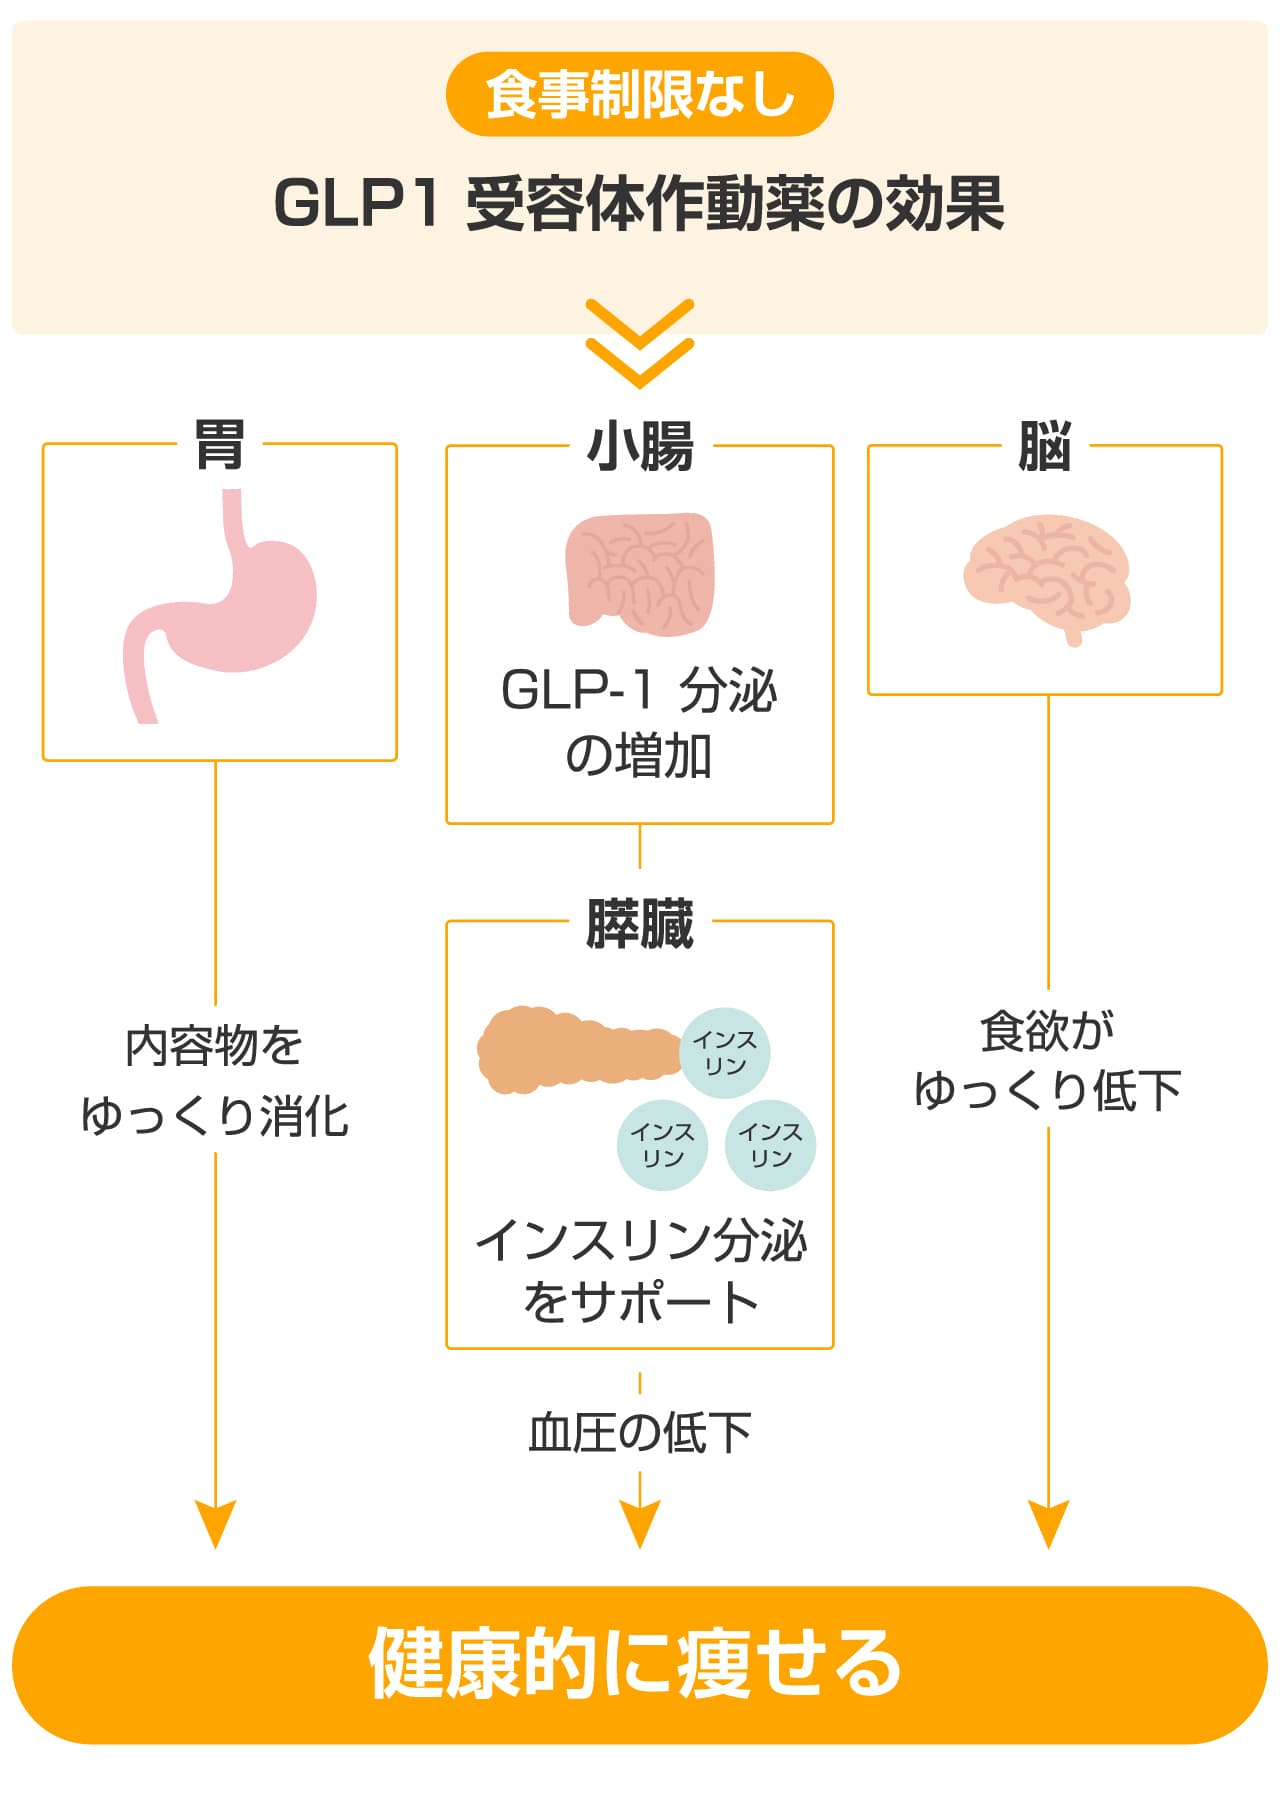 GLP-1受容体動作薬の効果